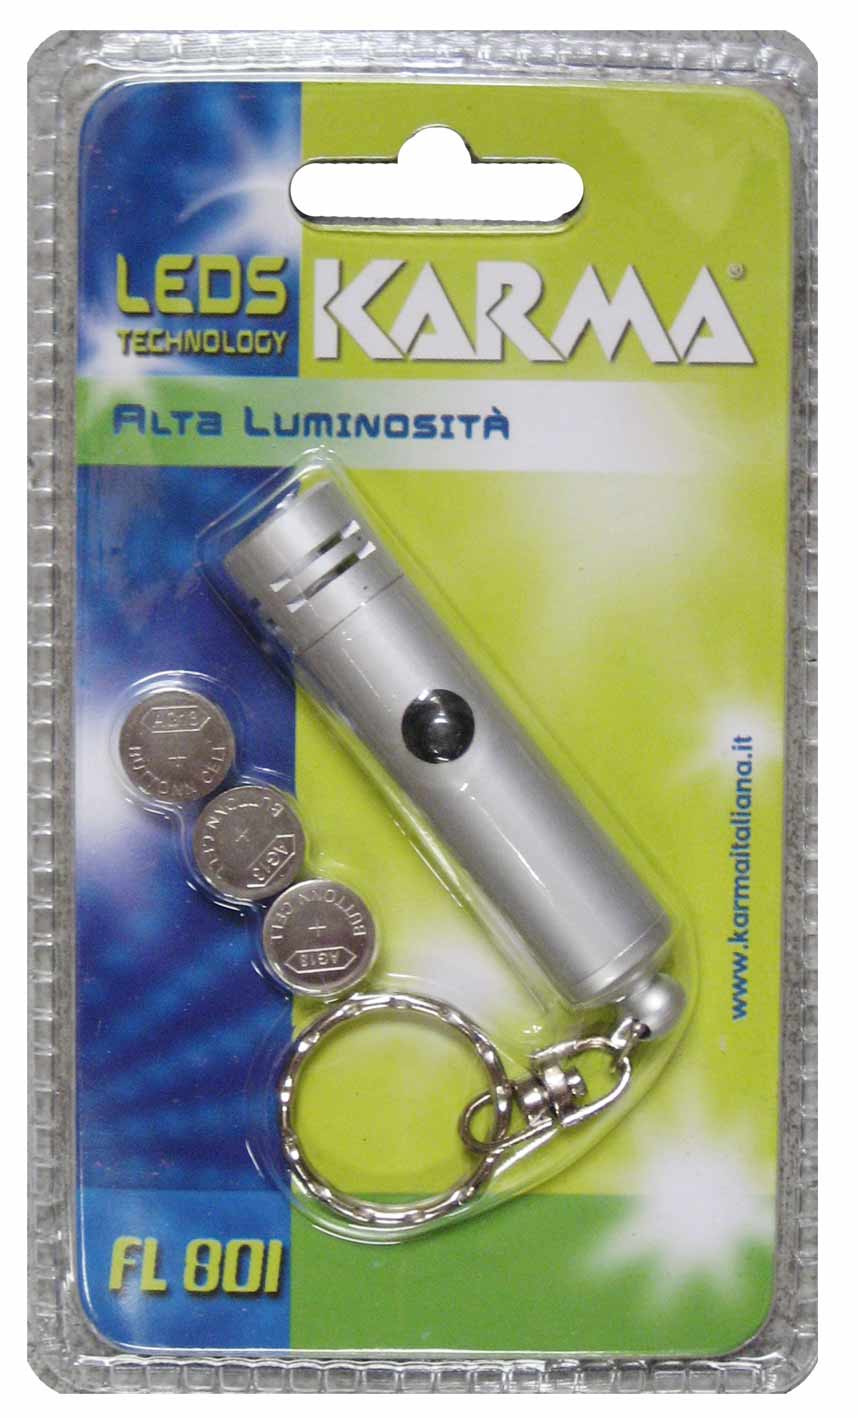 Karma FL 801